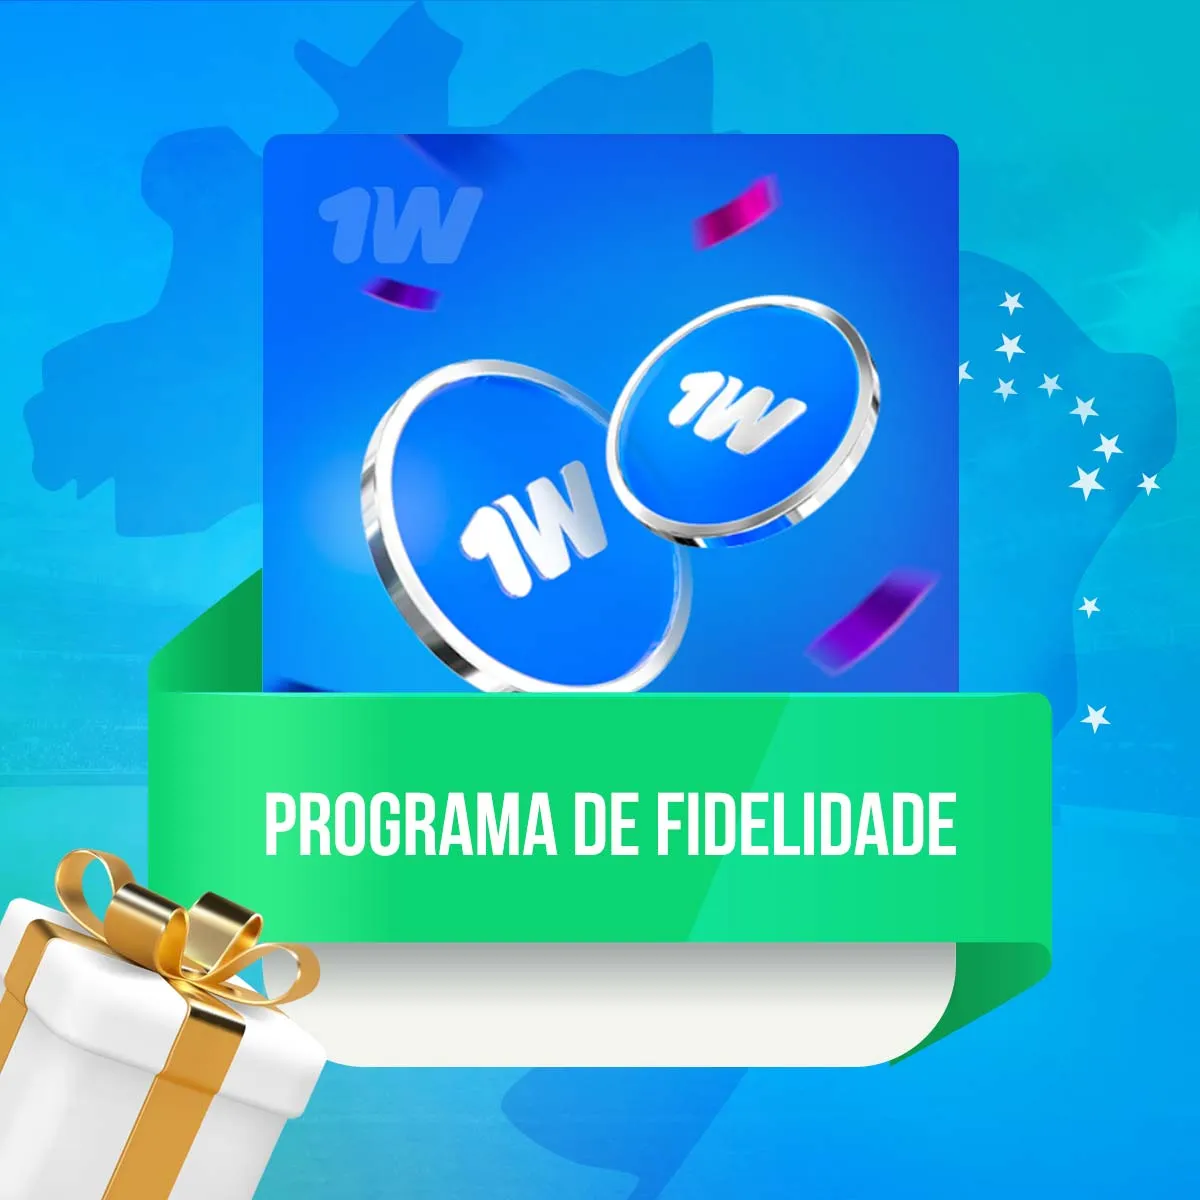 Programa de fidelidade no aplicativo de apostas 1win no Brasil